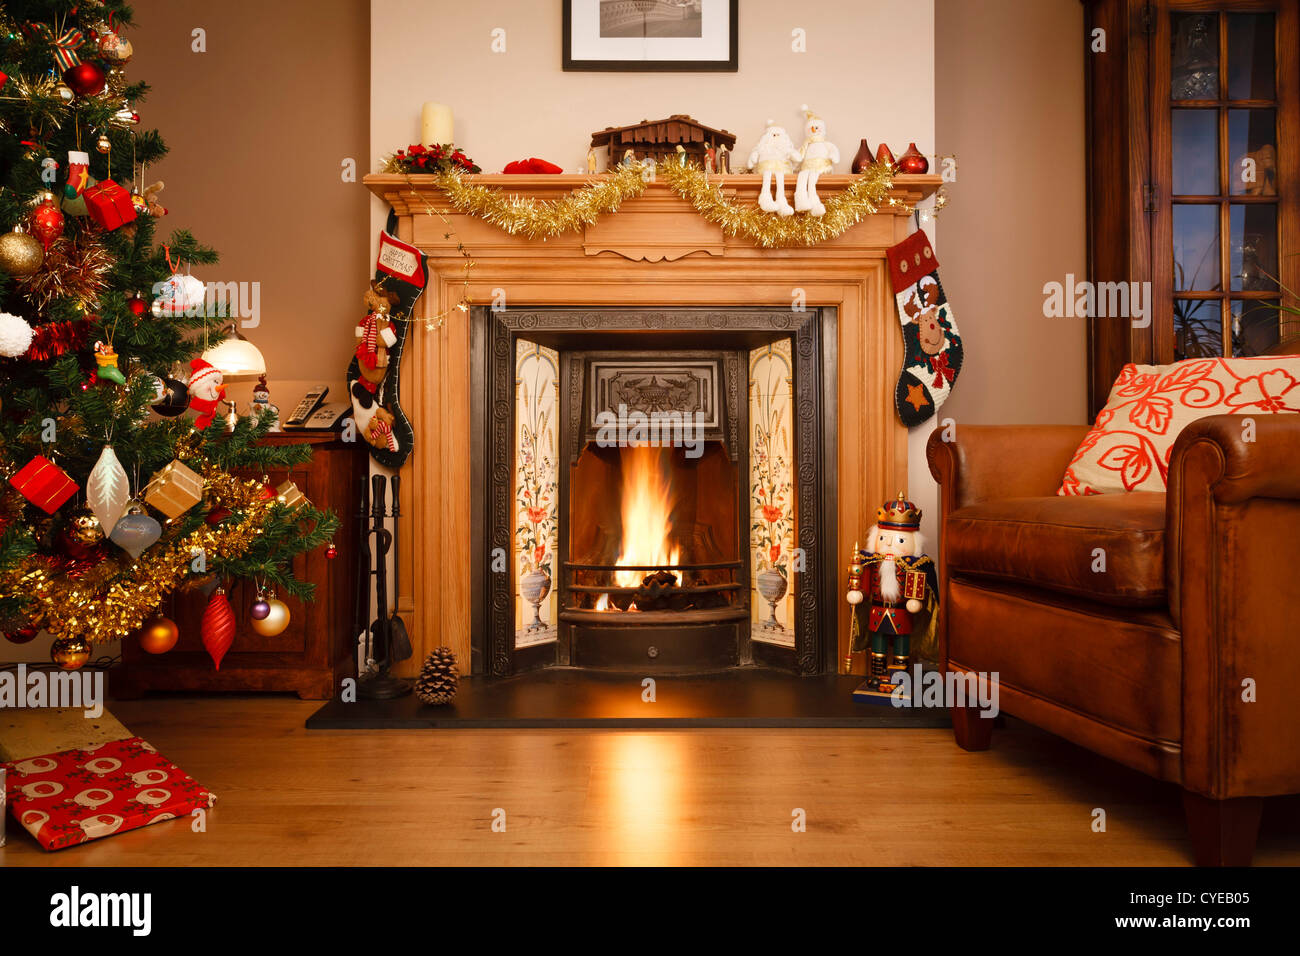 Albero Di Natale Con Foto Di Famiglia.Decorate Il Camino In Una Casa Di Famiglia Con Albero Di Natale Foto Stock Alamy